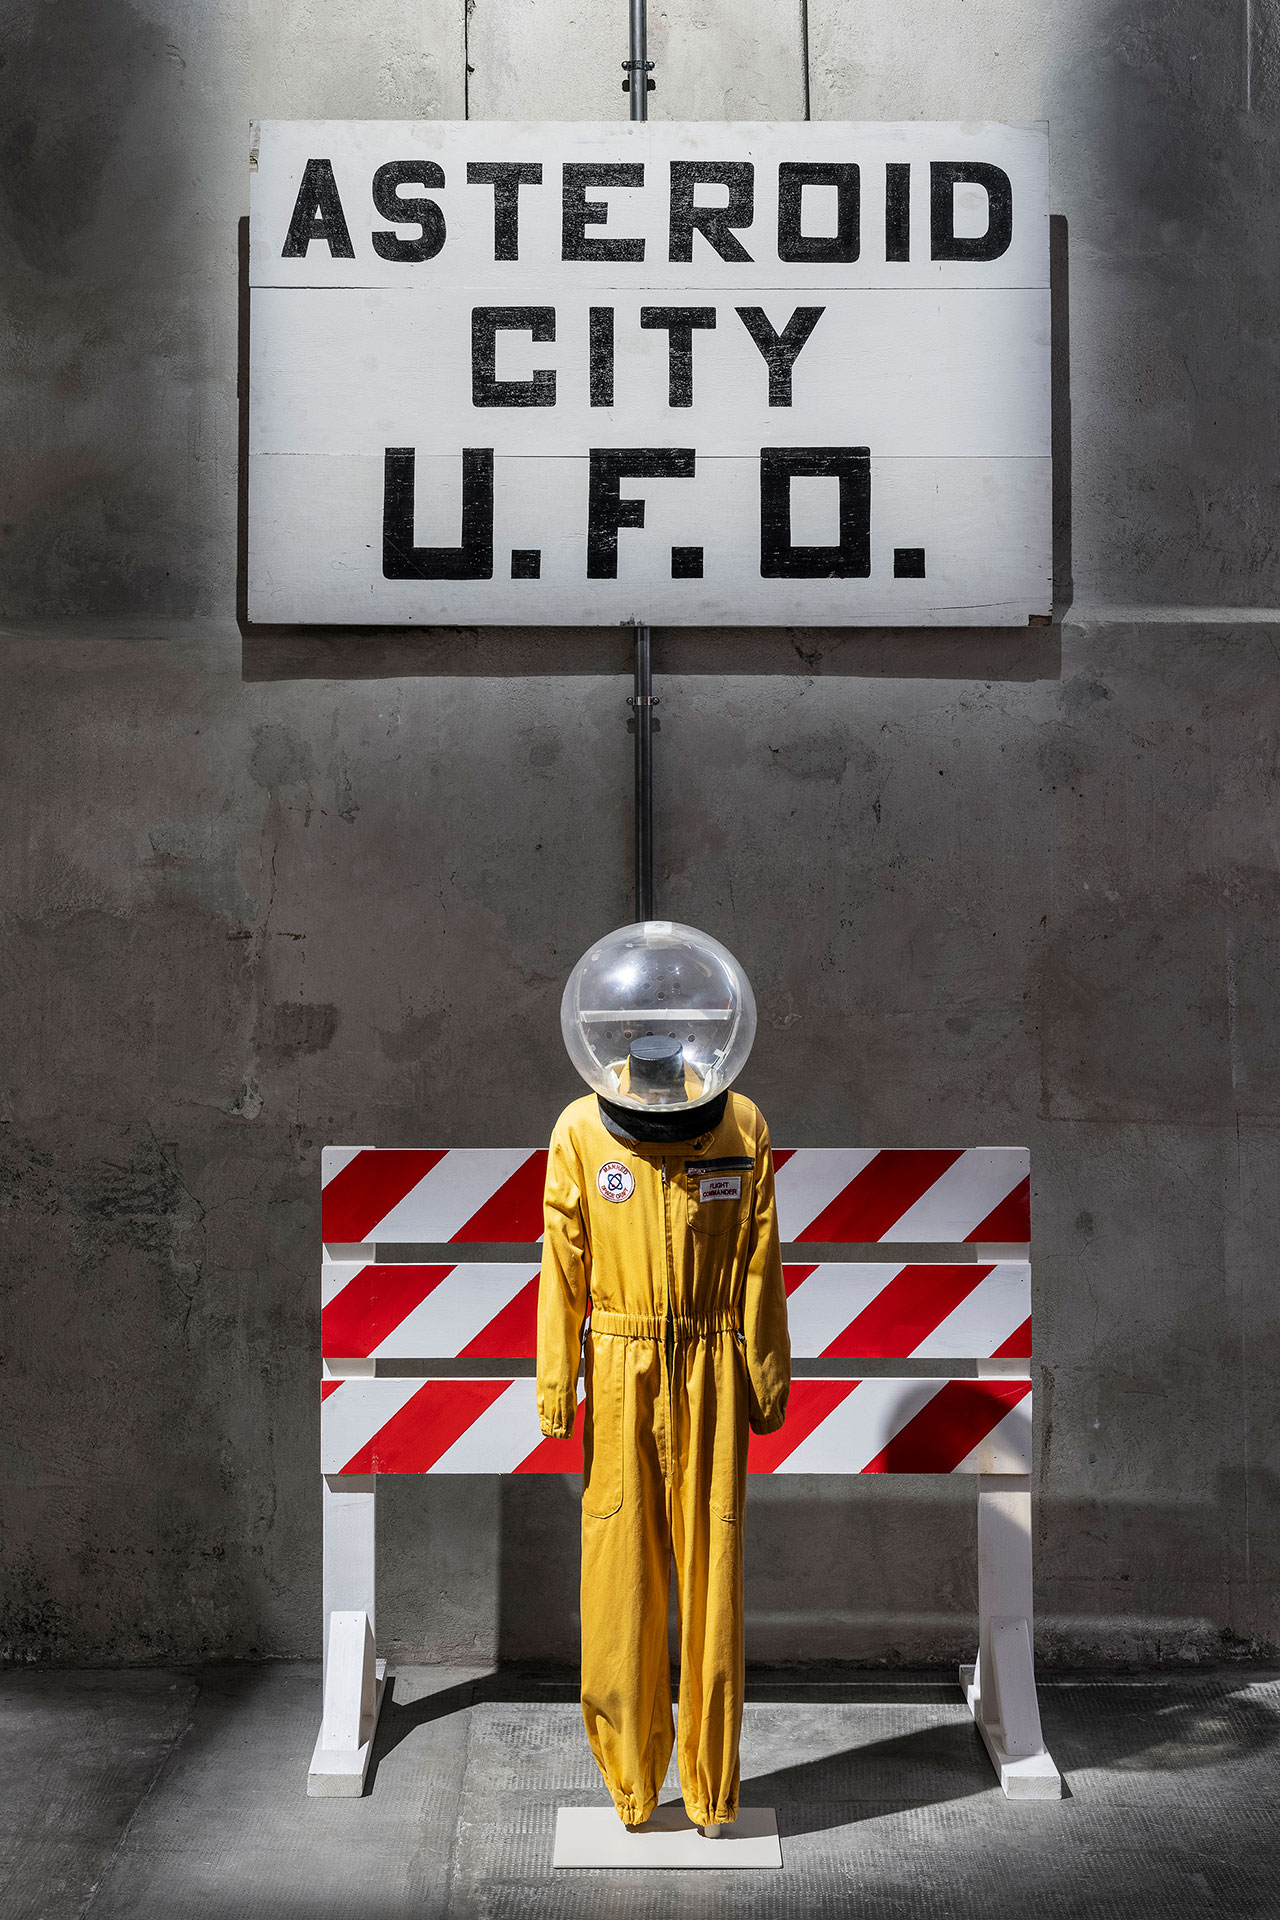 Exhibition view of “Wes Anderson – Asteroid City: Exhibition” at Fondazione Prada, Milan. Photo: Delfino Sisto Legnani - DSL Studio. Courtesy of Fondazione Prada.